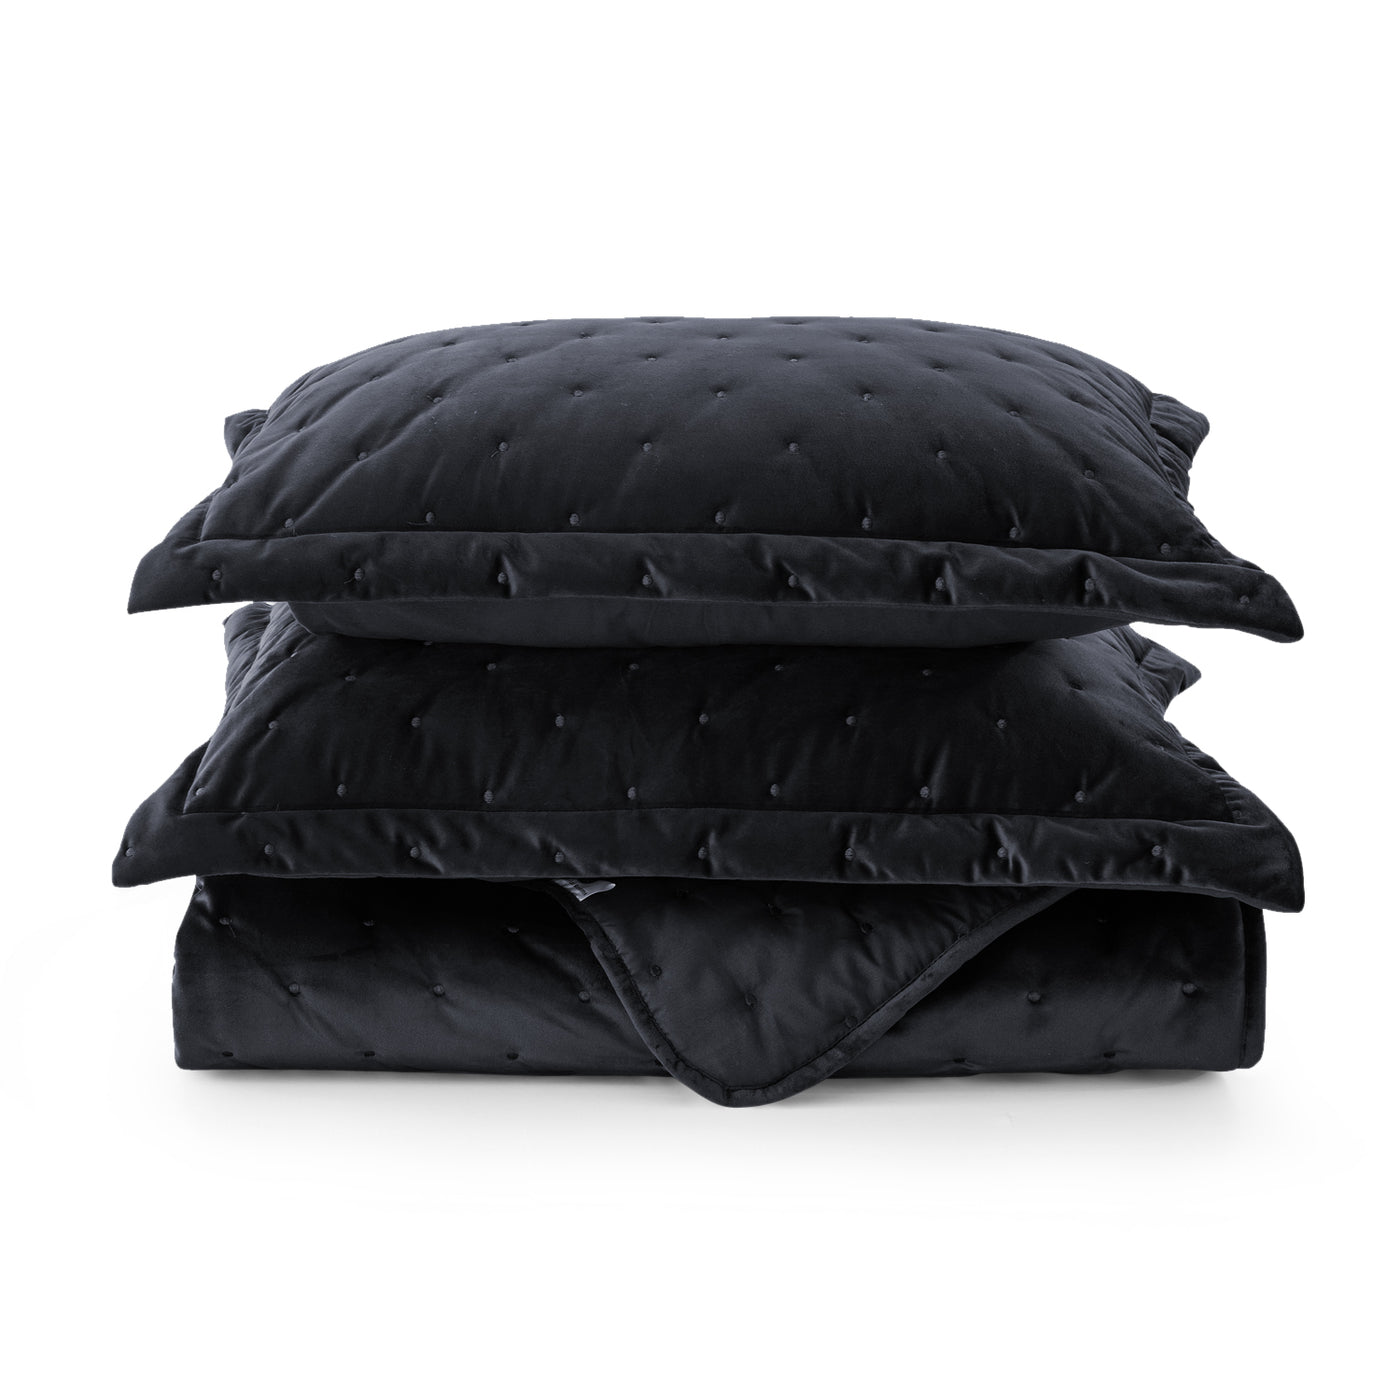 Crushed Velvet Bedspread Black Bedding Set